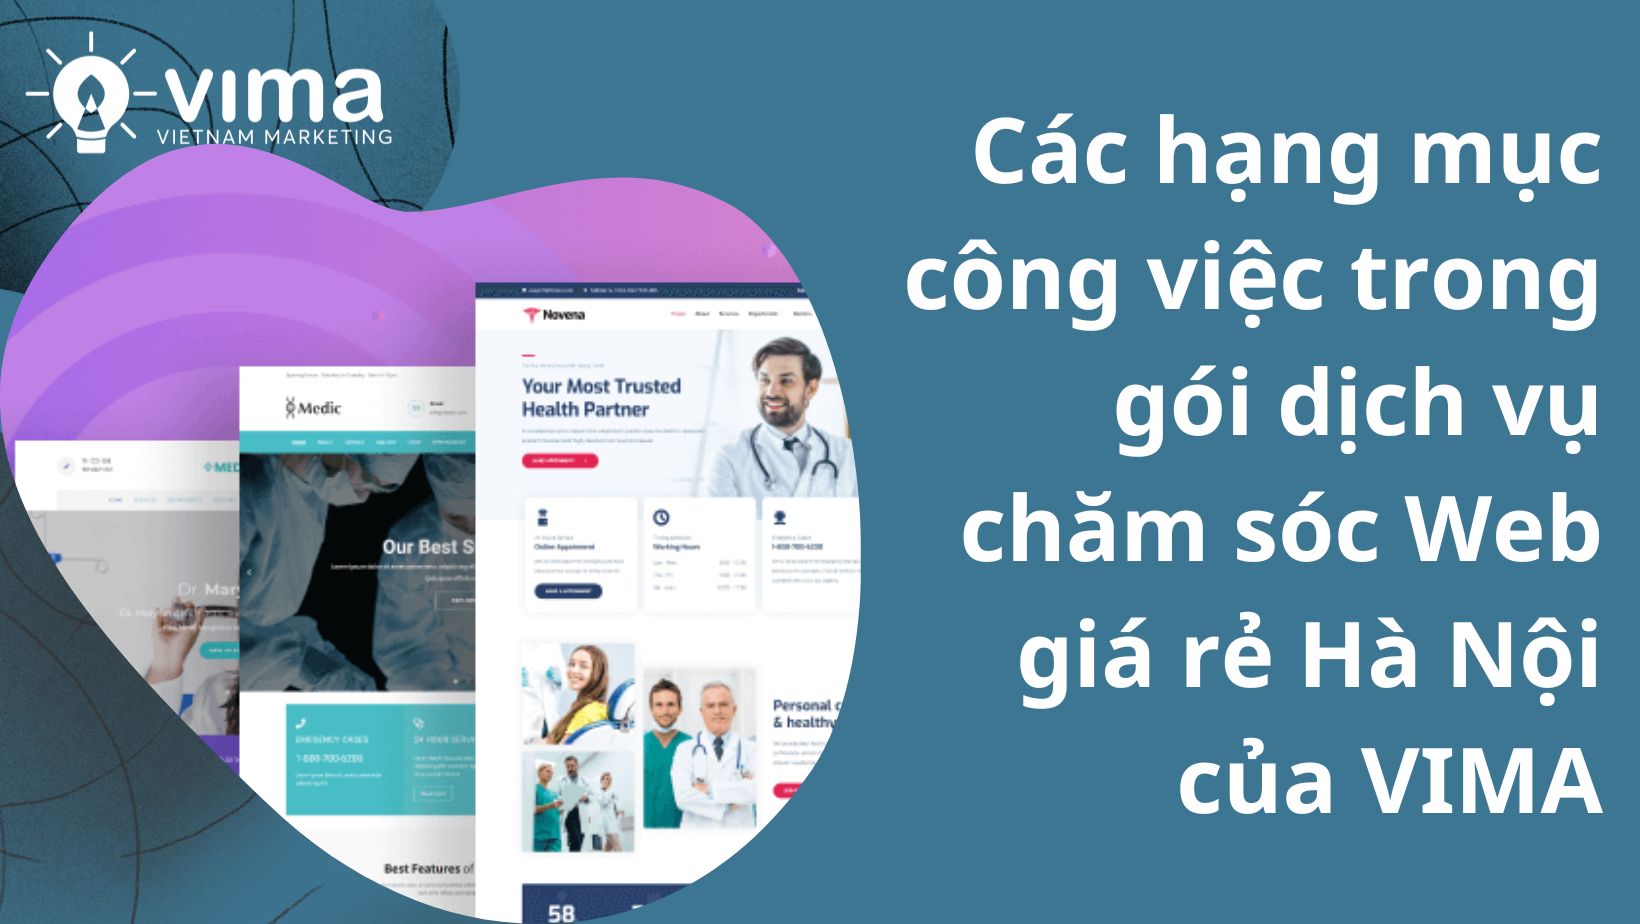 Các hạng mục công việc thực hiện trong gói chăm sóc Web tại Hà Nội uy tín của VIMA